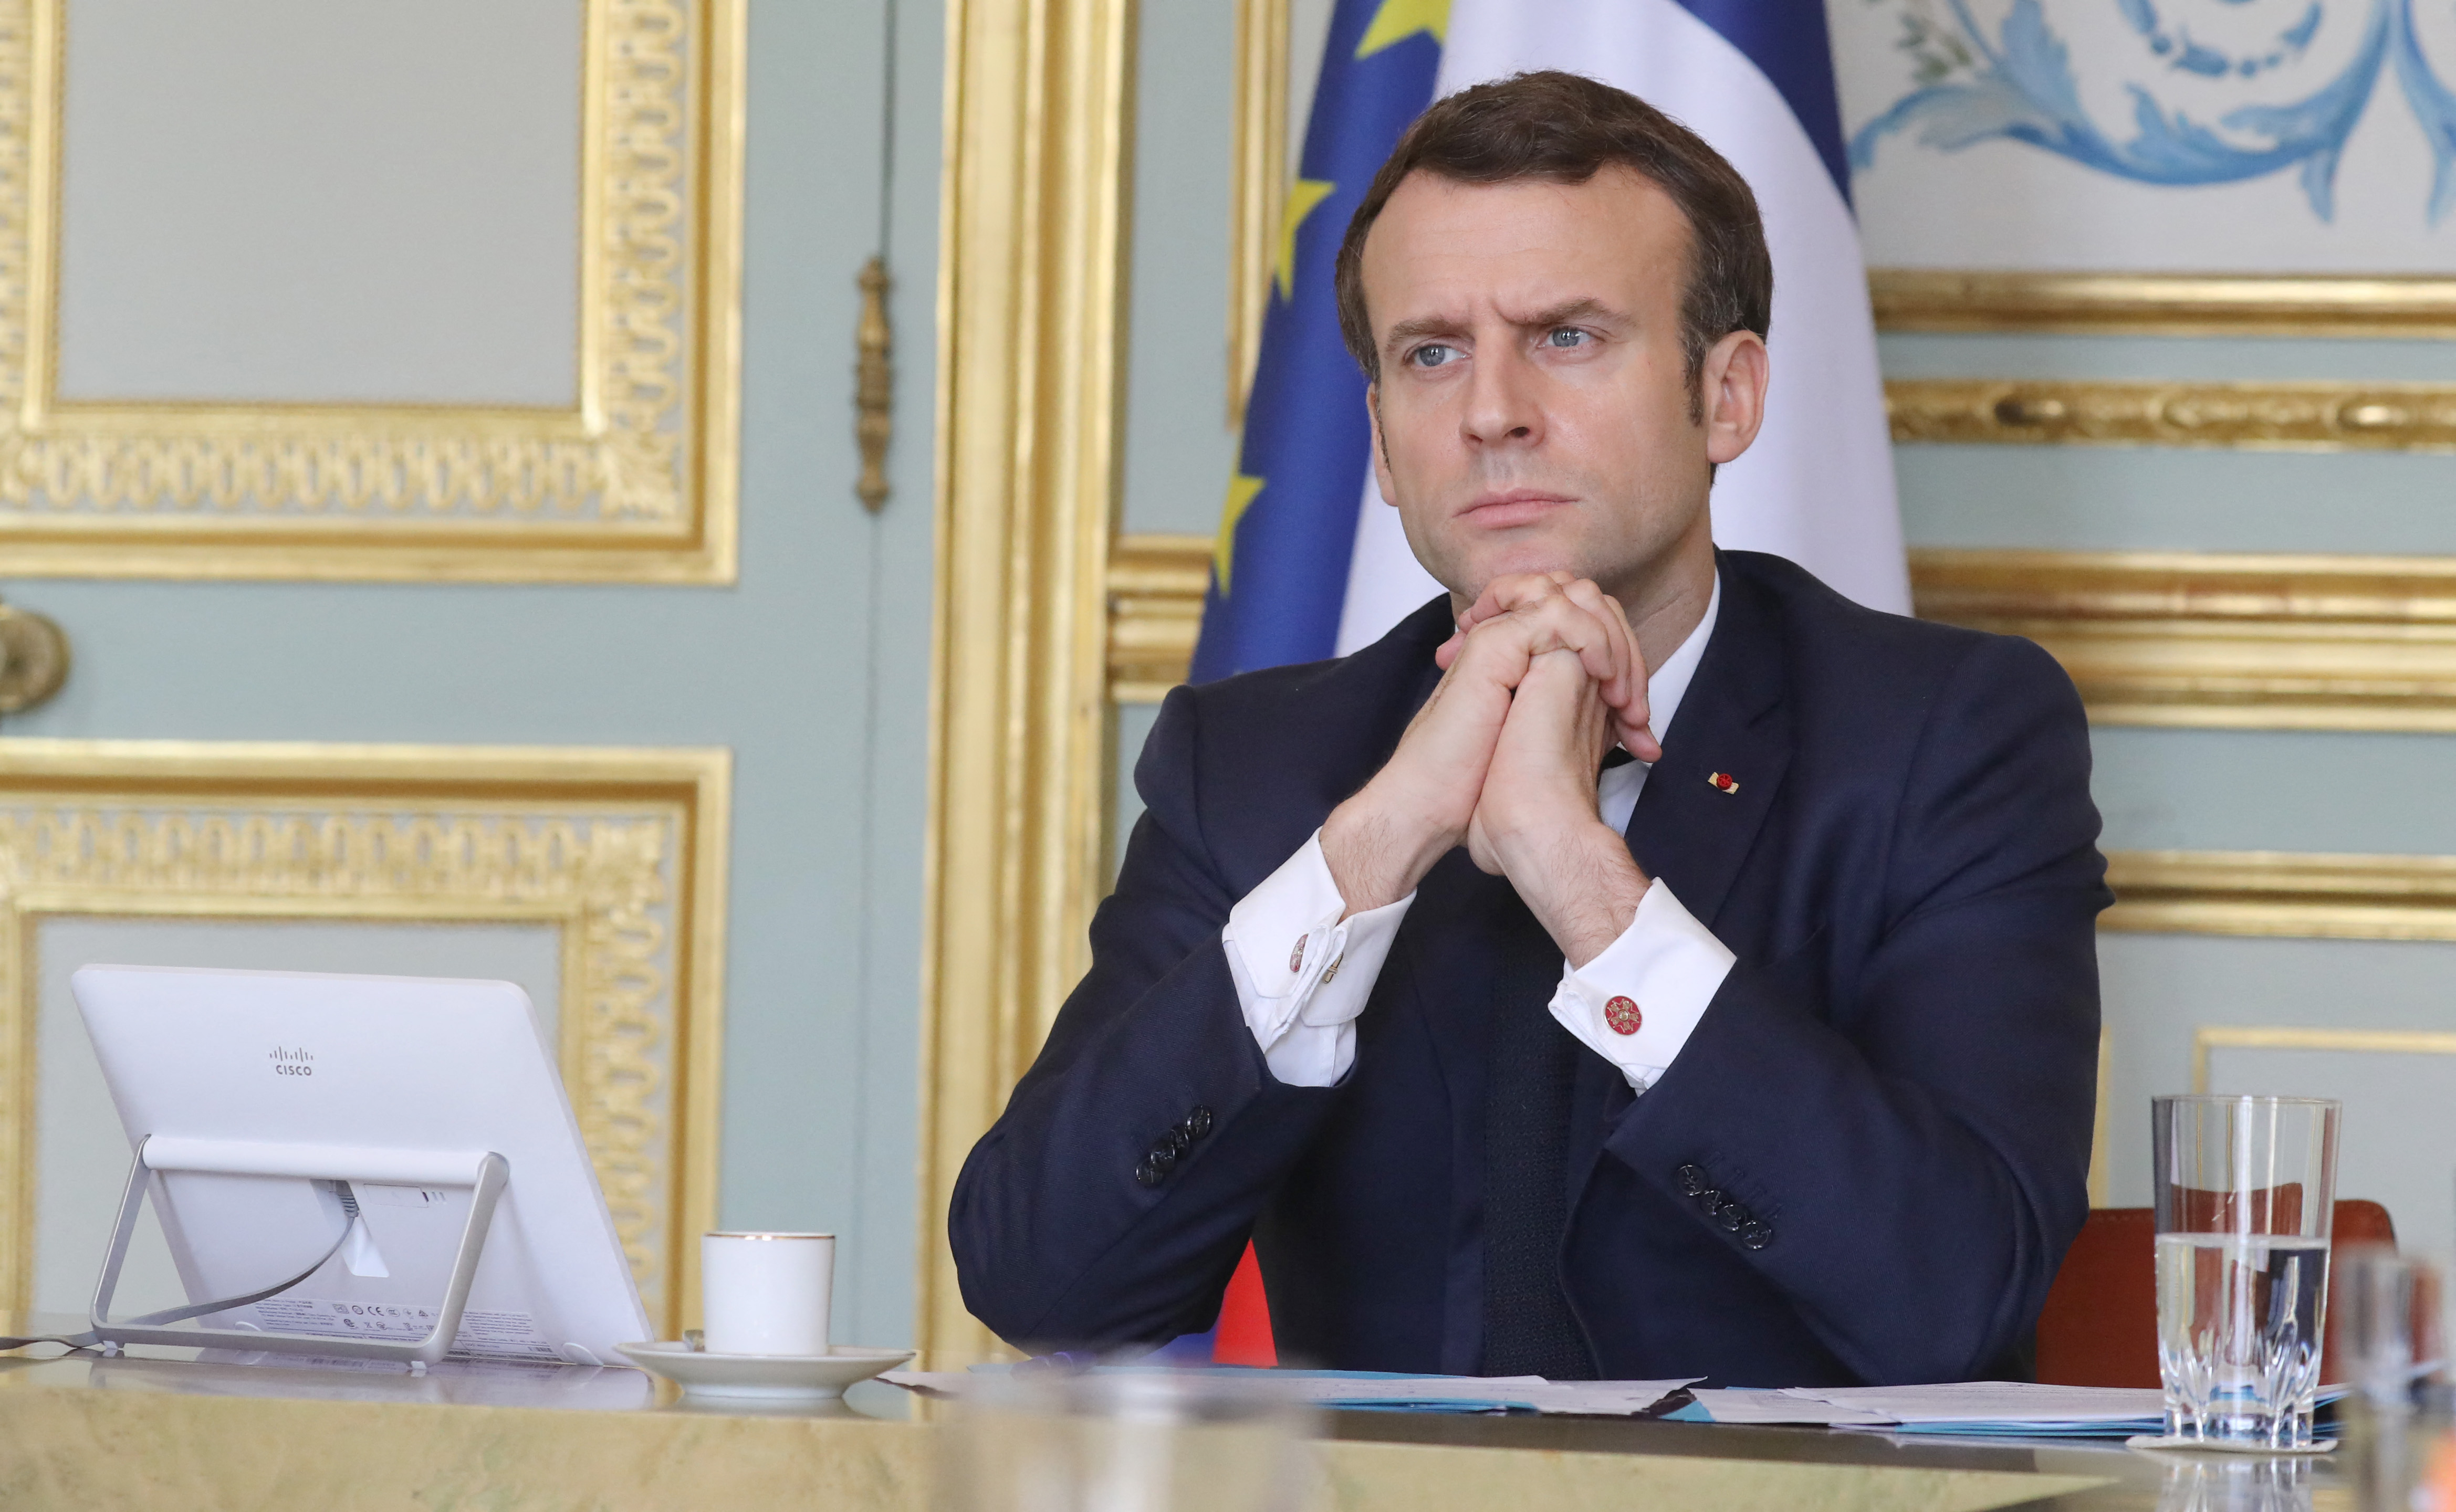 Macron nem készül lecserélni az eddigi miniszterelnököt, megbízta kormányalakítással